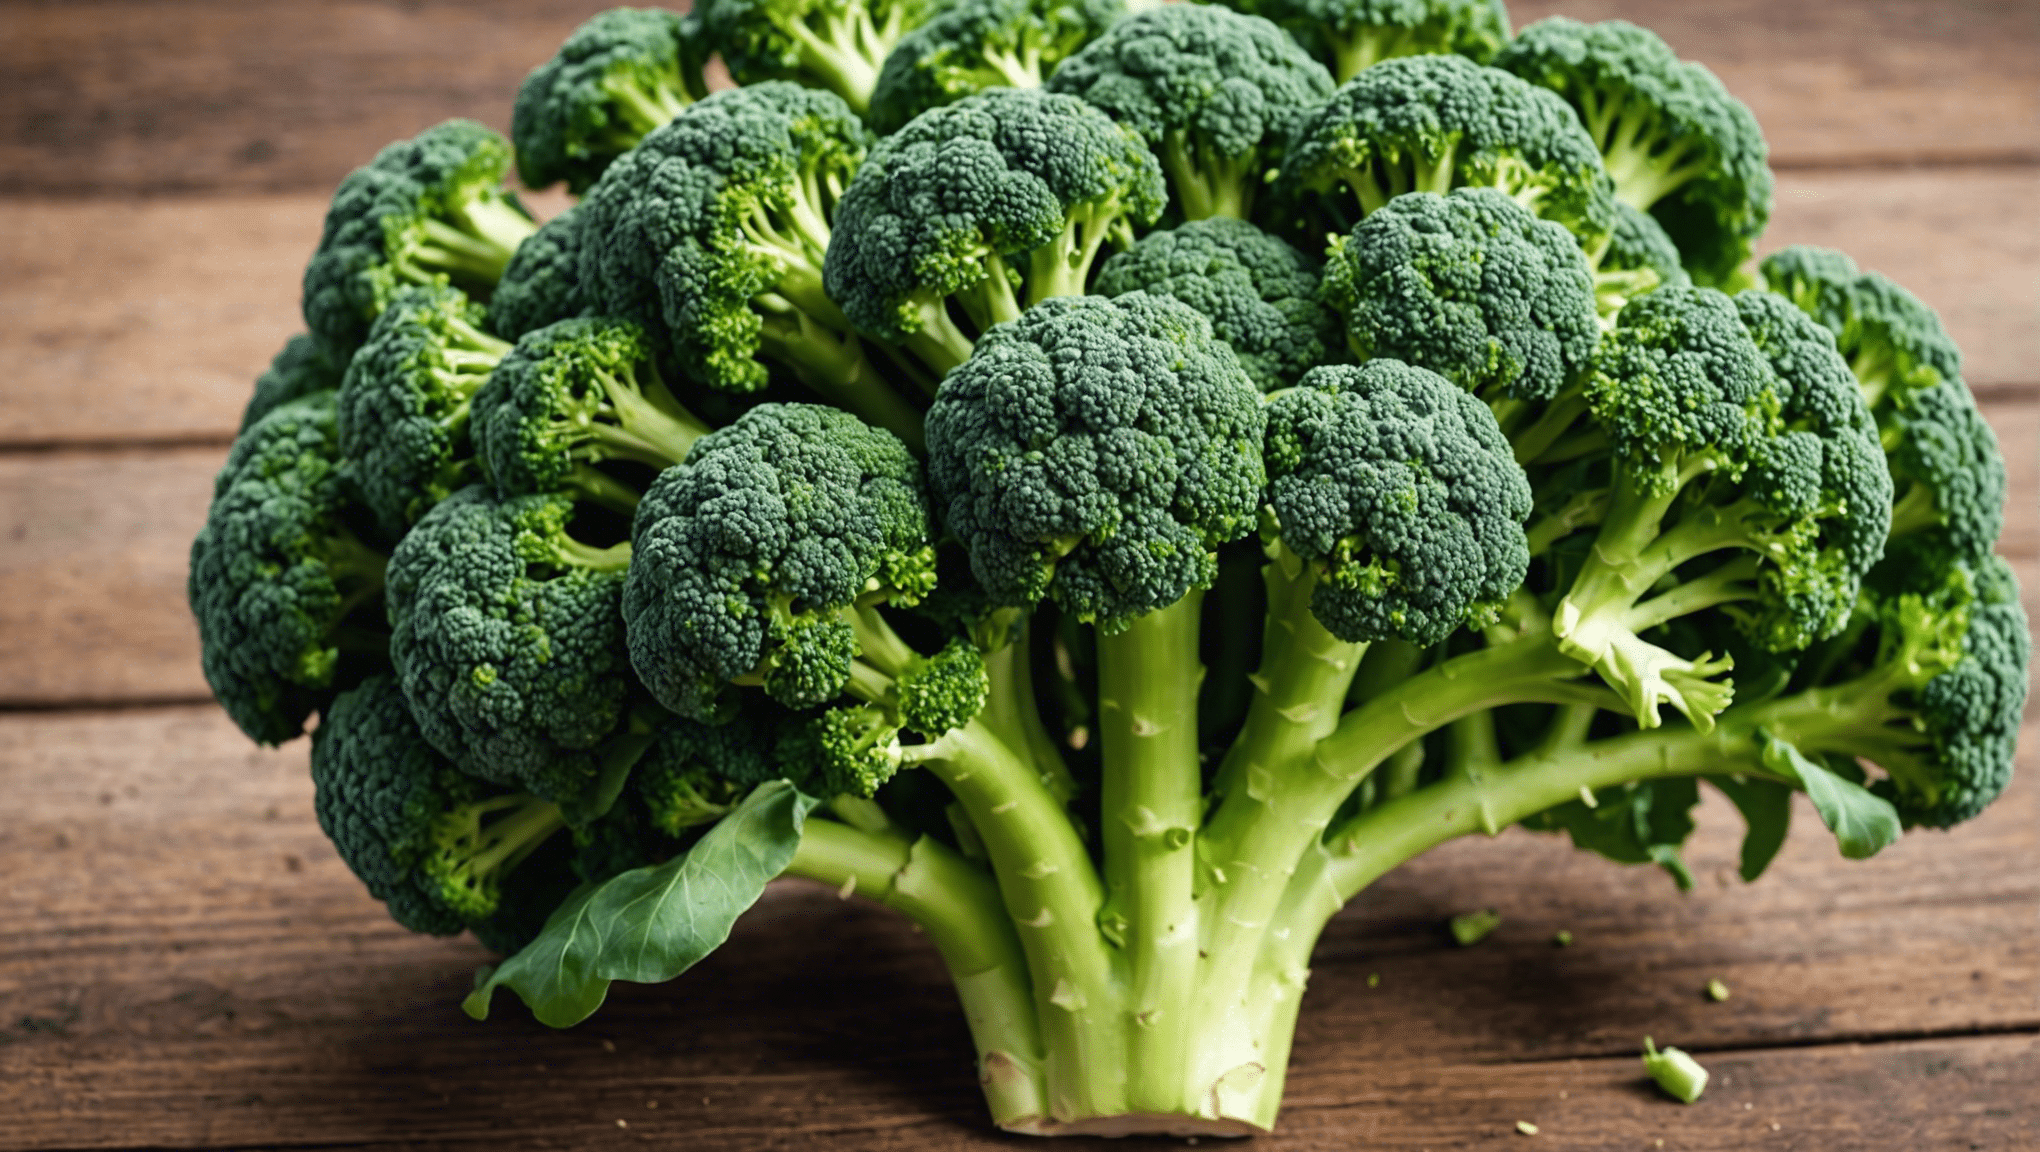 ontdek de redenen achter de populariteit van broccolizaden in gezondheidstrends en hun potentiële gezondheidsvoordelen.